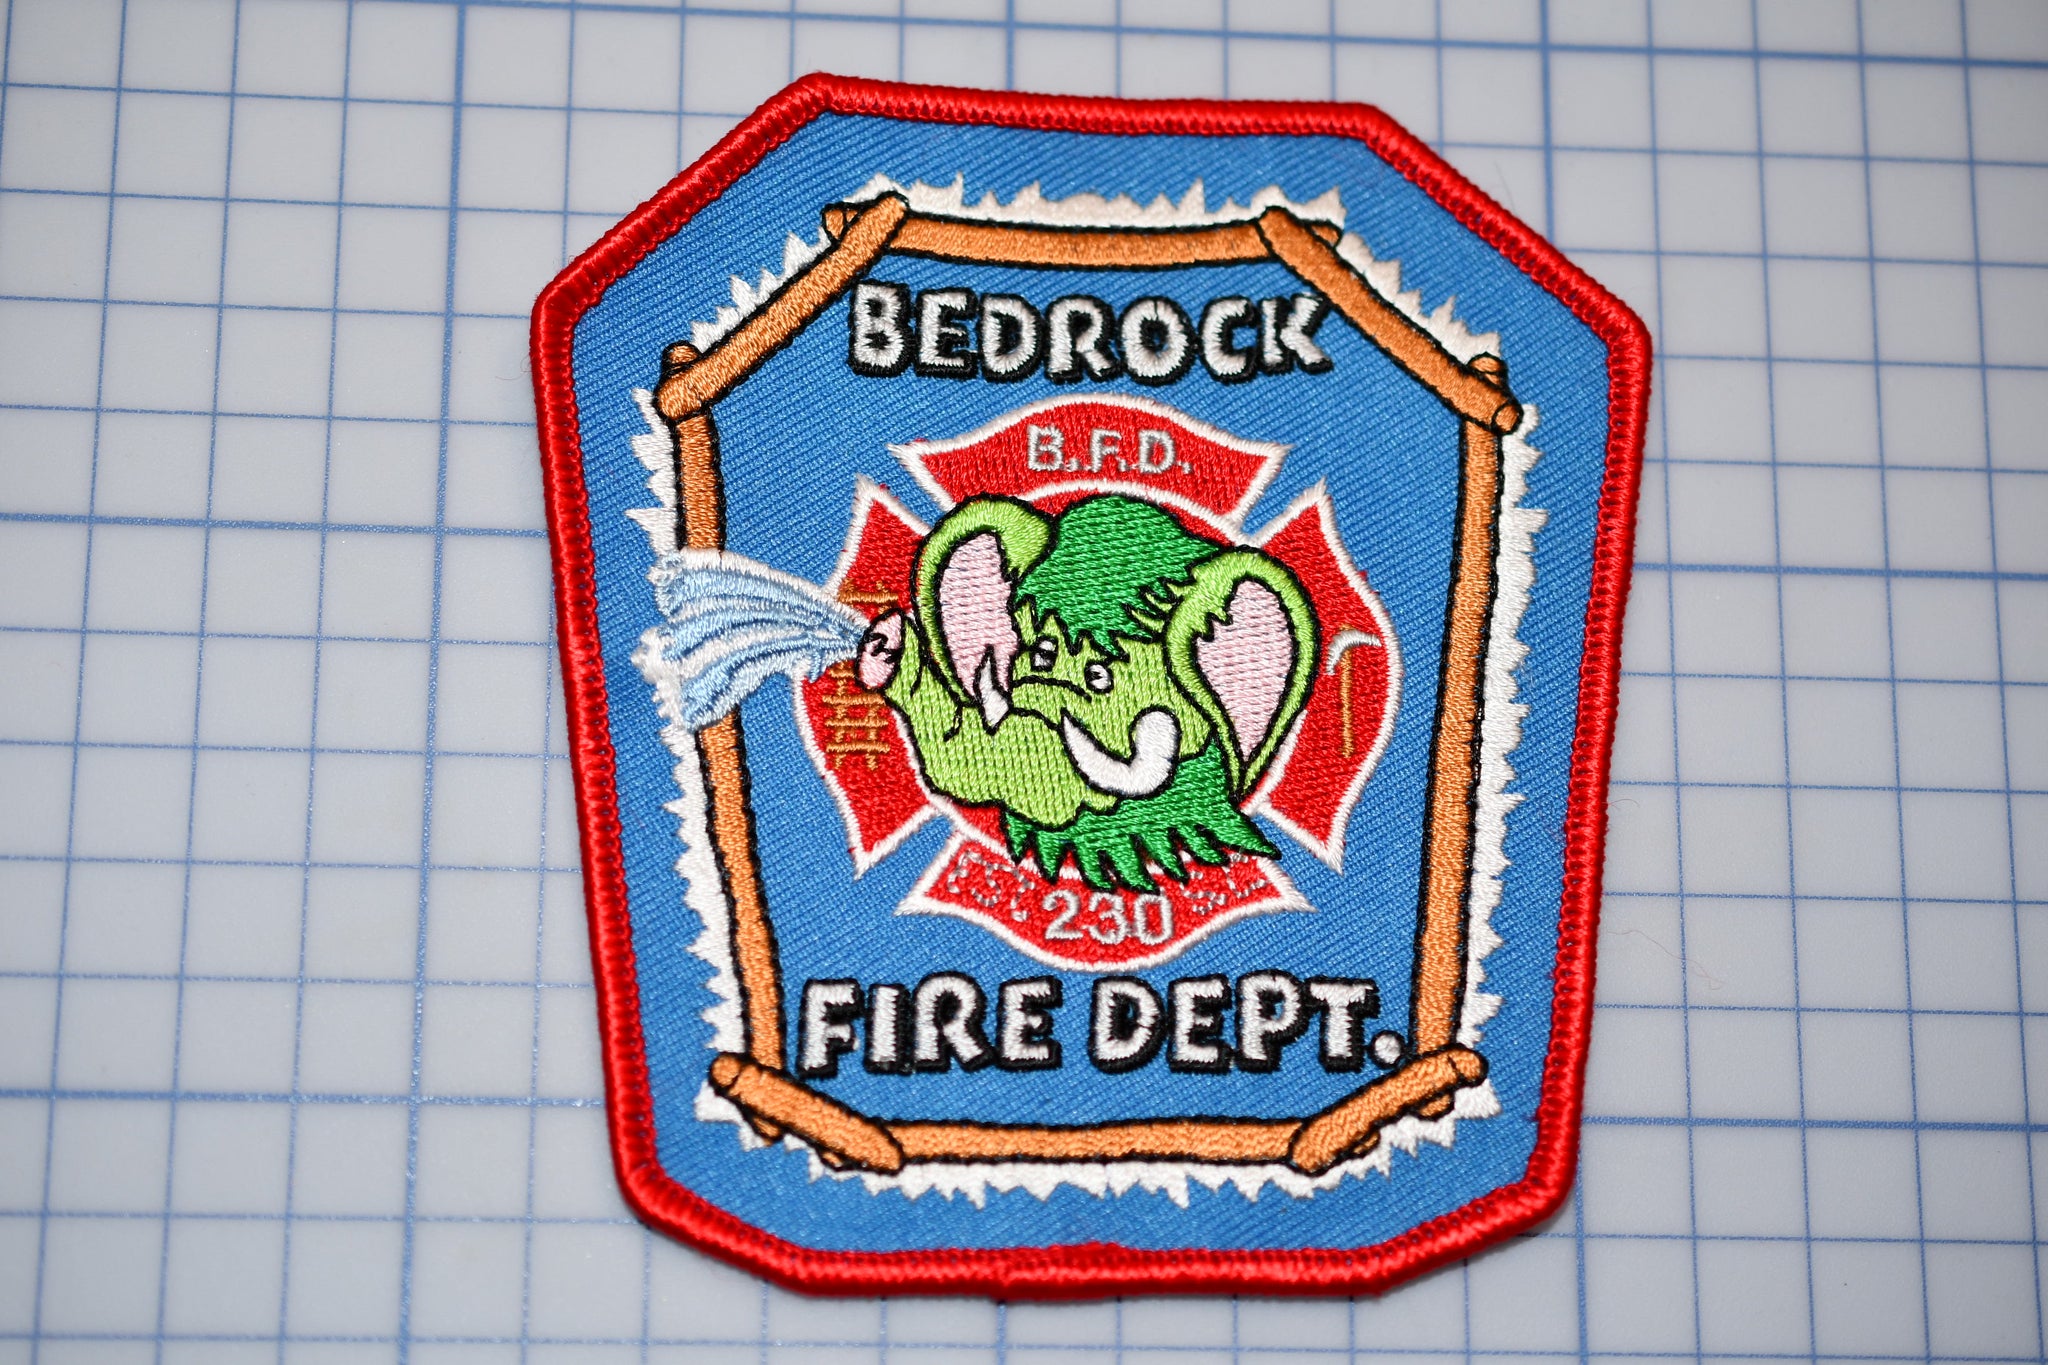 Bedrock Fire Department Patch (B29-337)